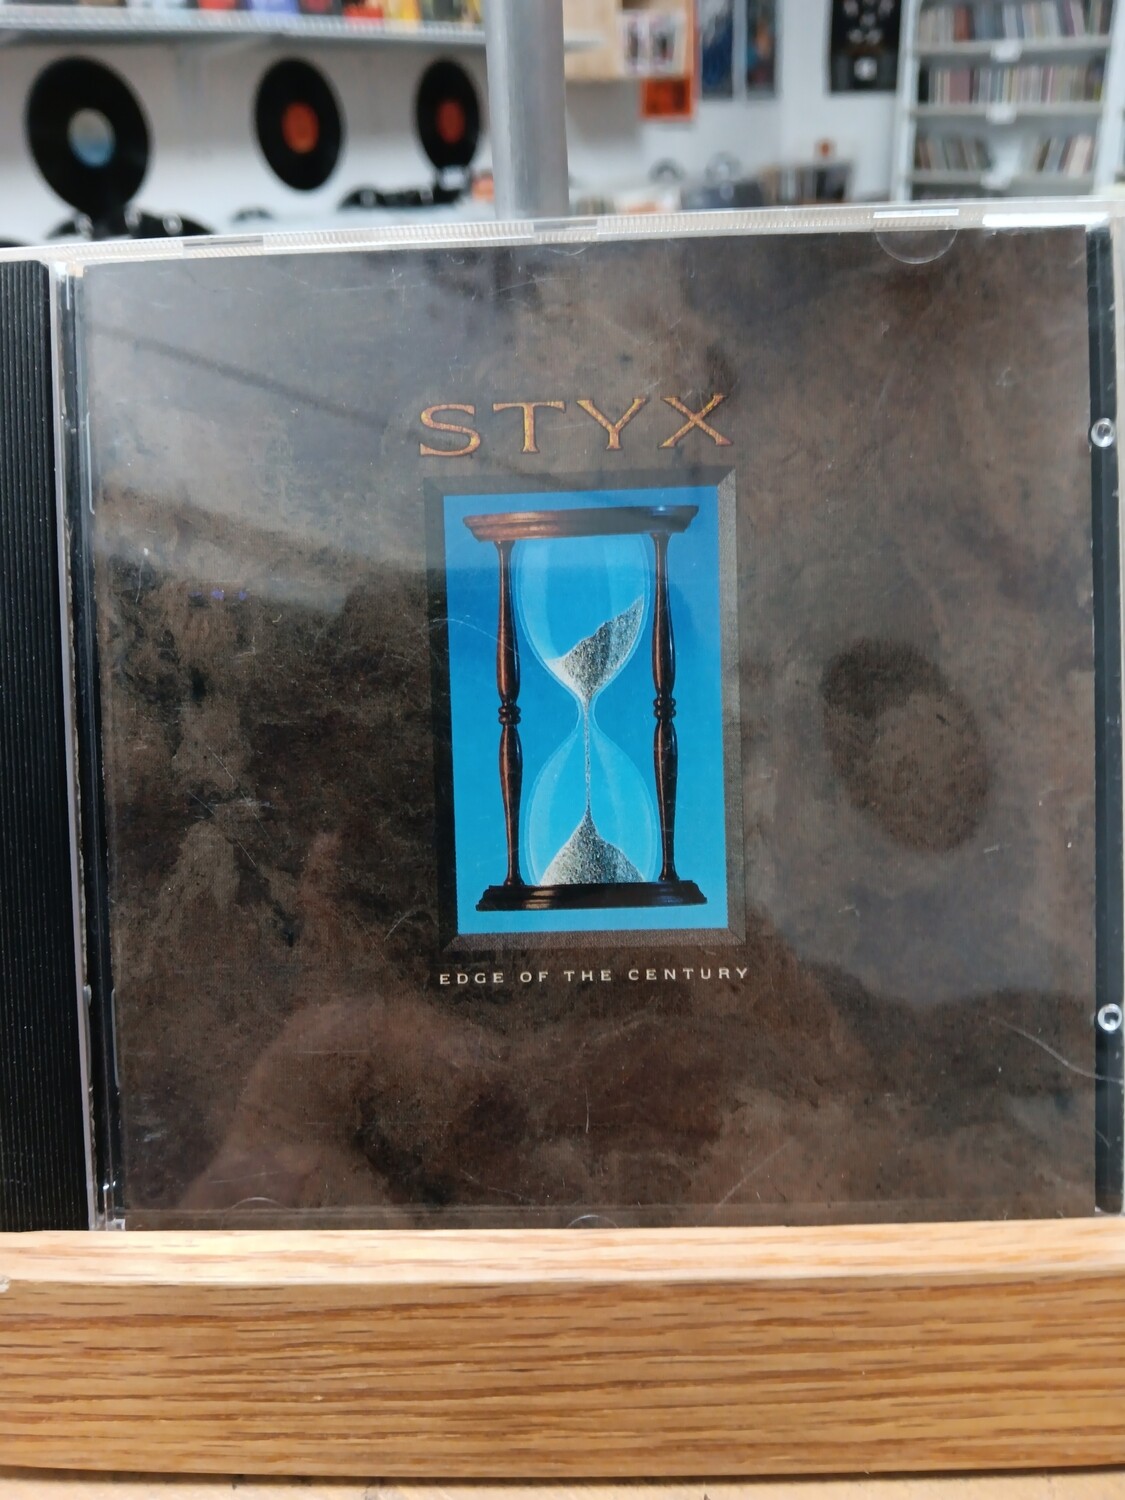 STYX - Edge of the century (CD)